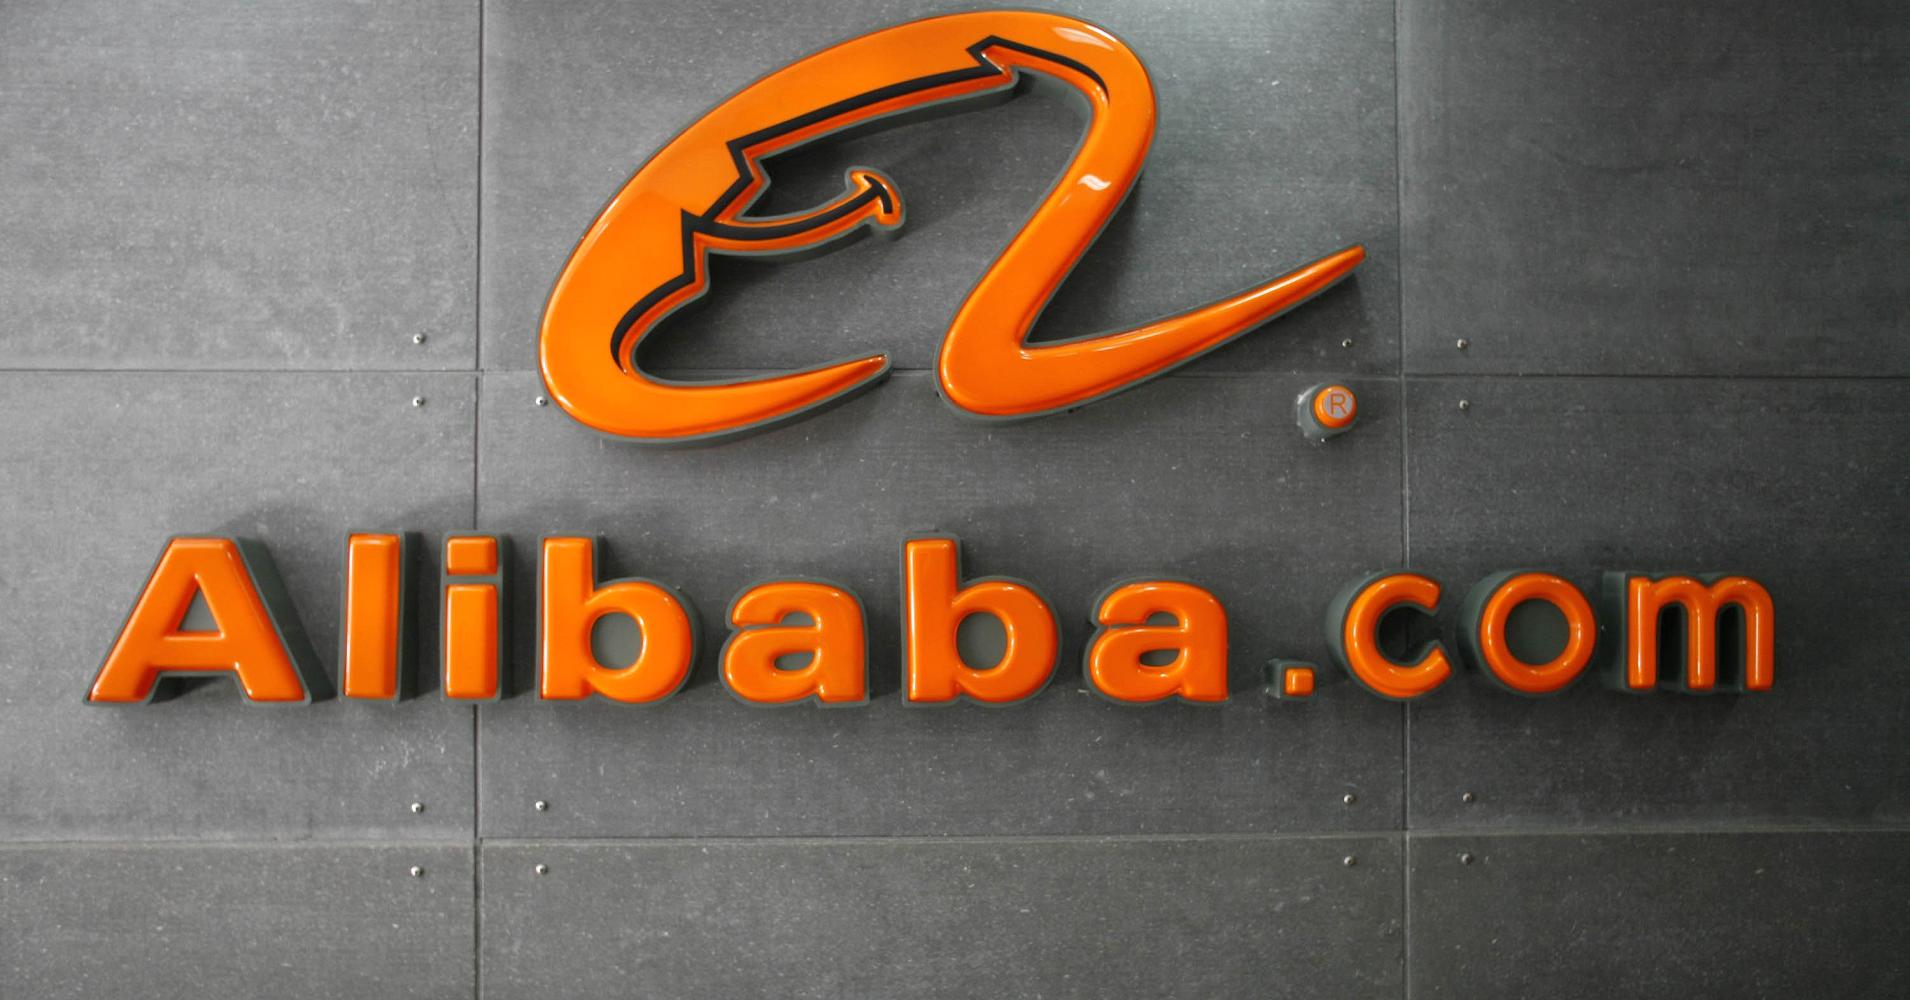 empresas mas ricas del mundo. Alibaba